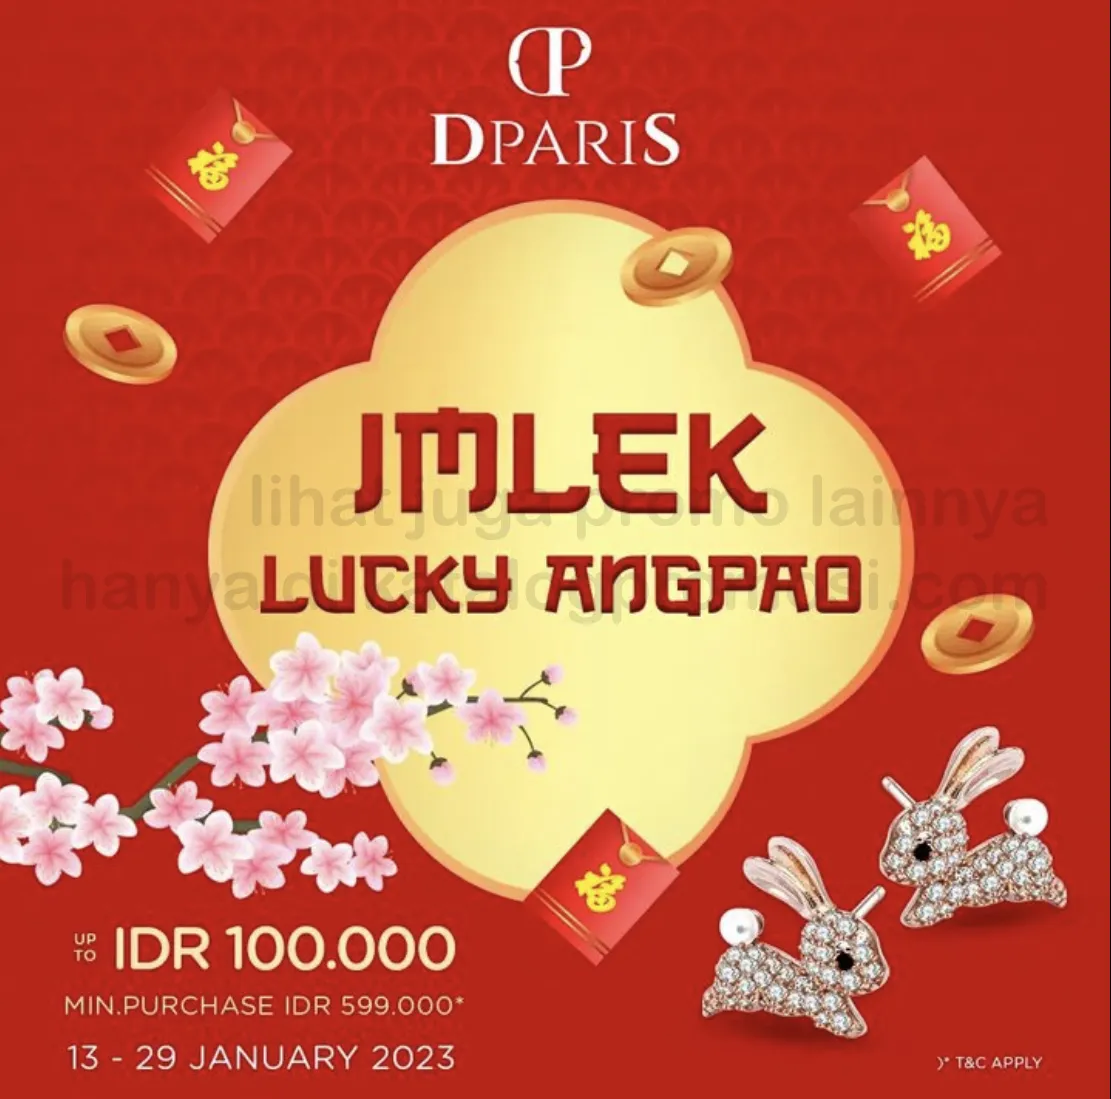 Promo DPARIS IMLEK LUCKY ANGPAO up to Rp. 100.000